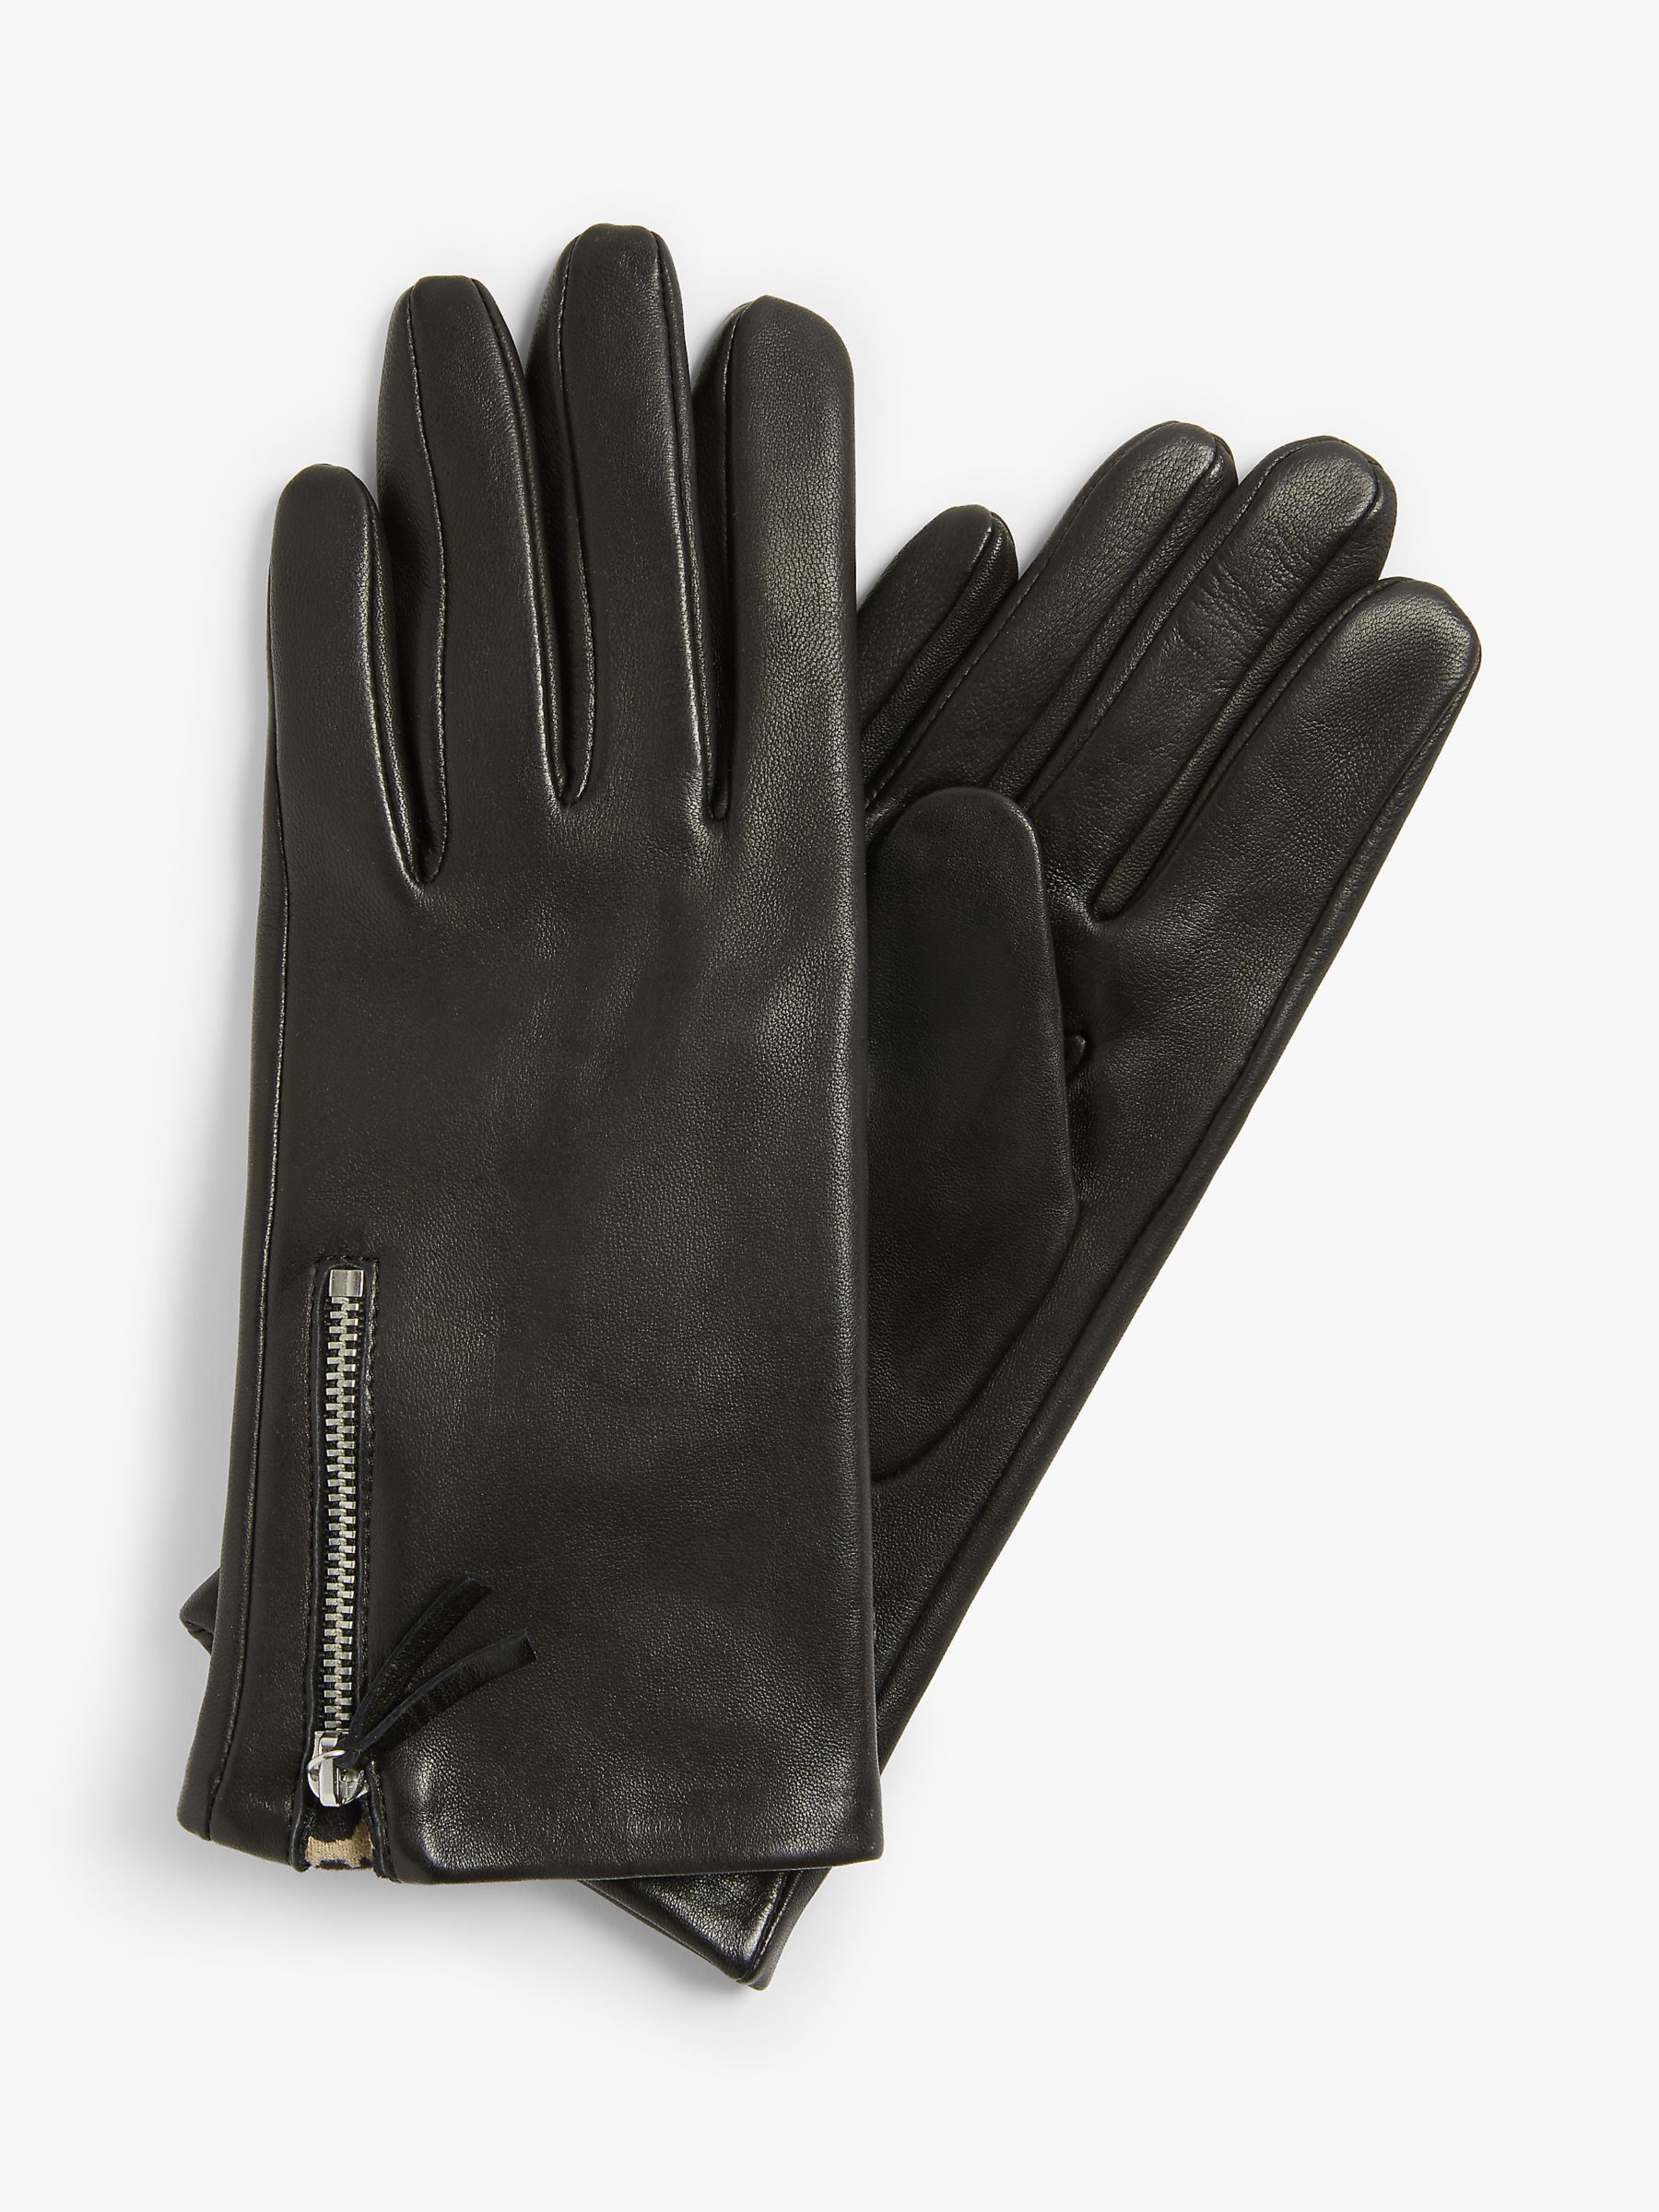 TED BAKER Leather Gloves BALLOT | lupon.gov.ph